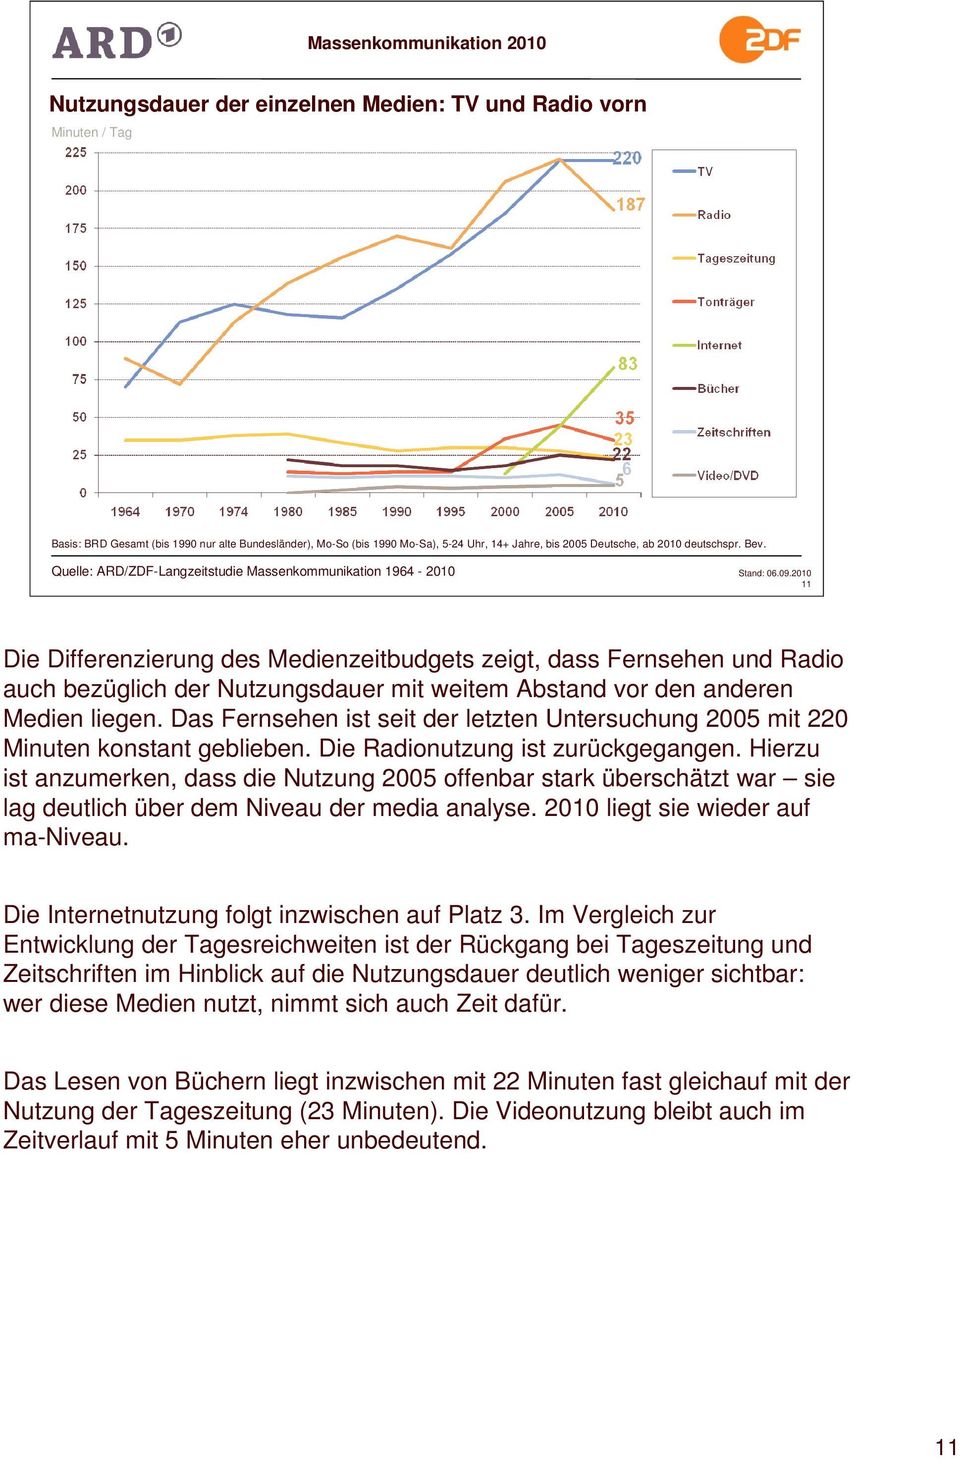 Quelle: ARD/ZDF-Langzeitstudie Massenkommunikation 1964-2010 11 Die Differenzierung des Medienzeitbudgets zeigt, dass Fernsehen und Radio auch bezüglich der Nutzungsdauer mit weitem Abstand vor den